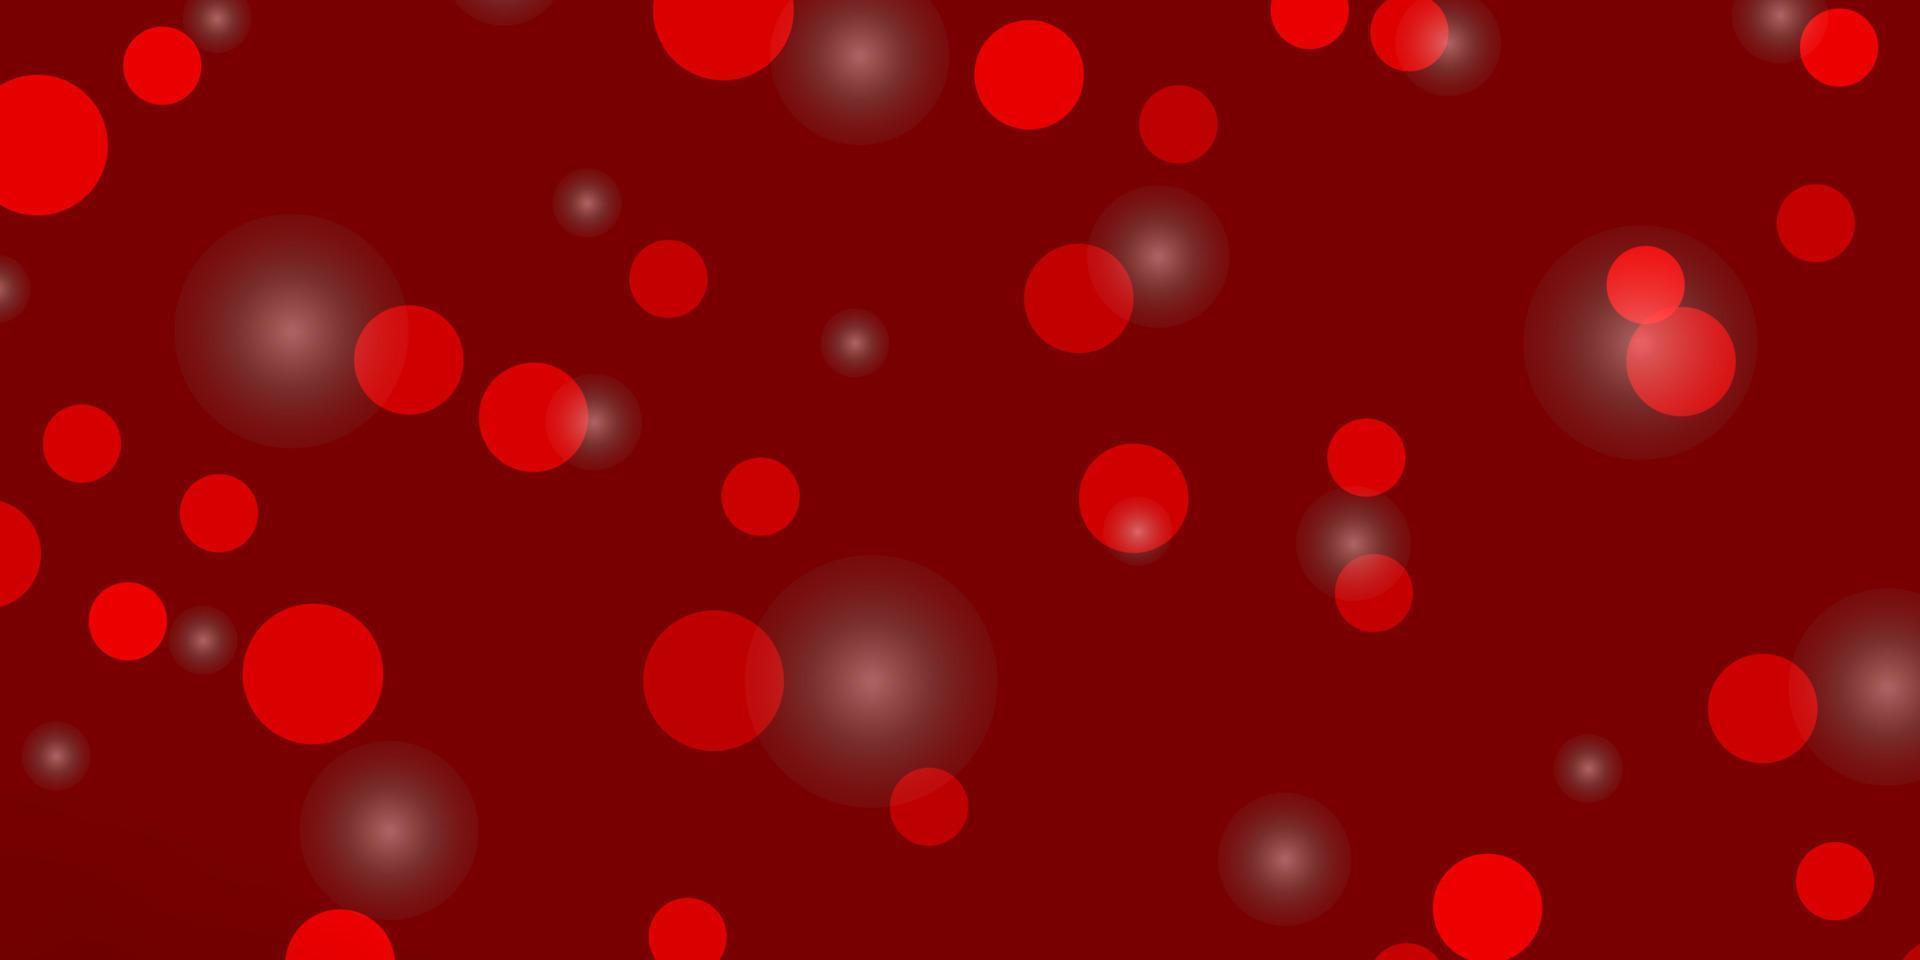 fond de vecteur rouge clair avec des cercles, des étoiles.